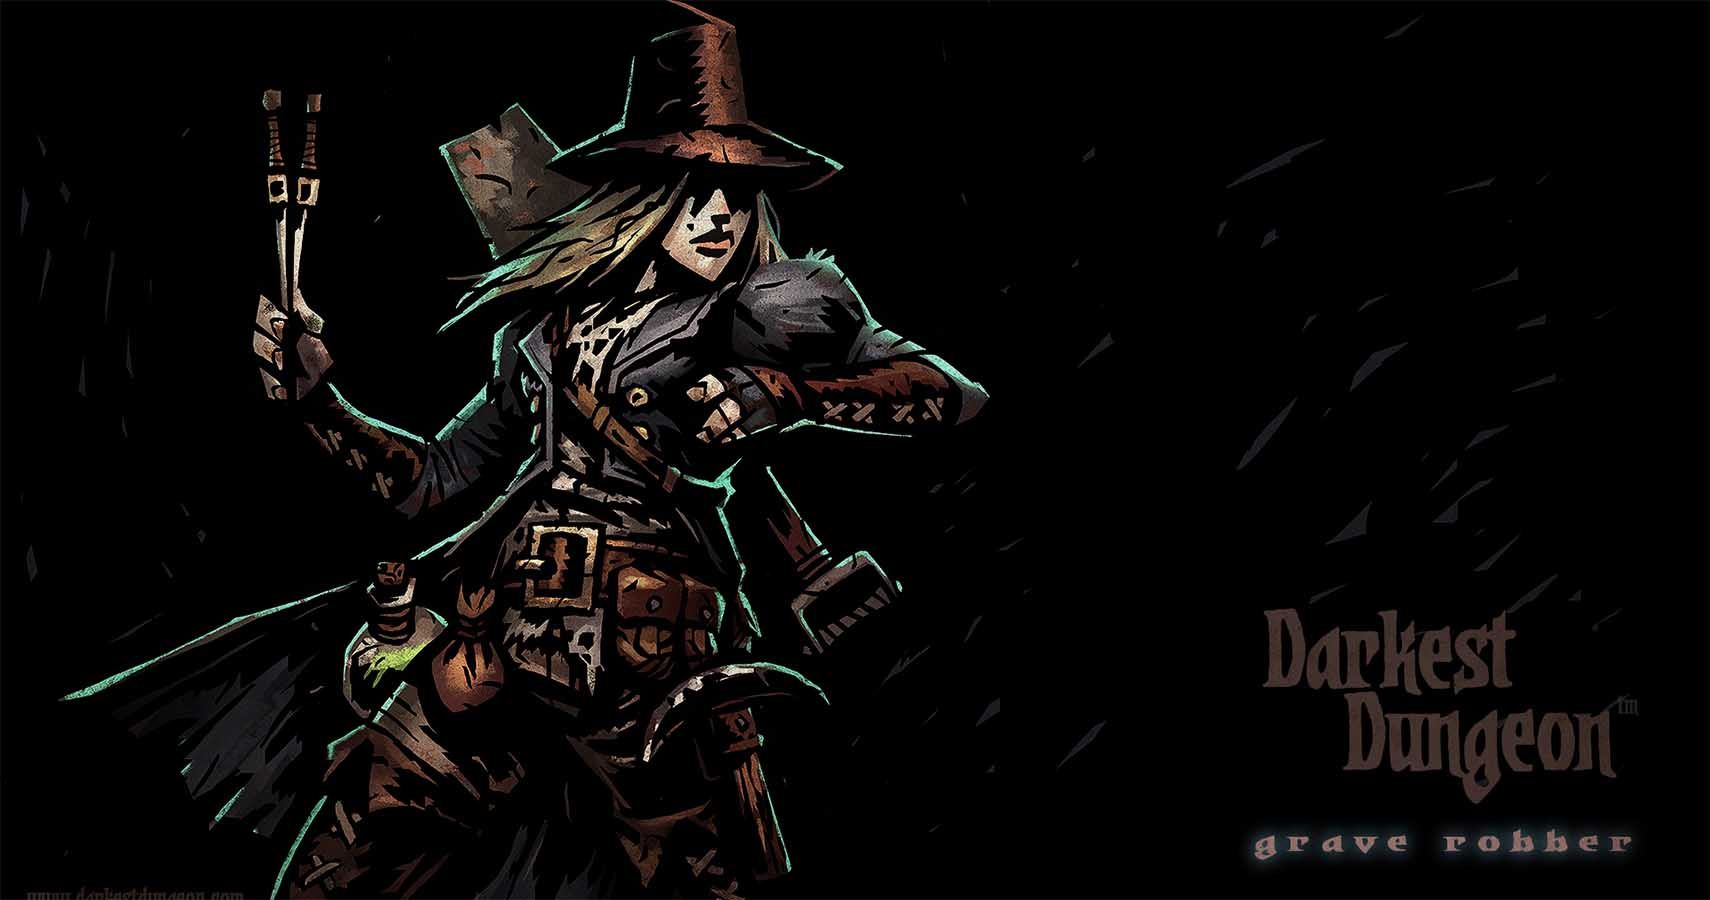 darkest dungeon plague doctor and grave robber